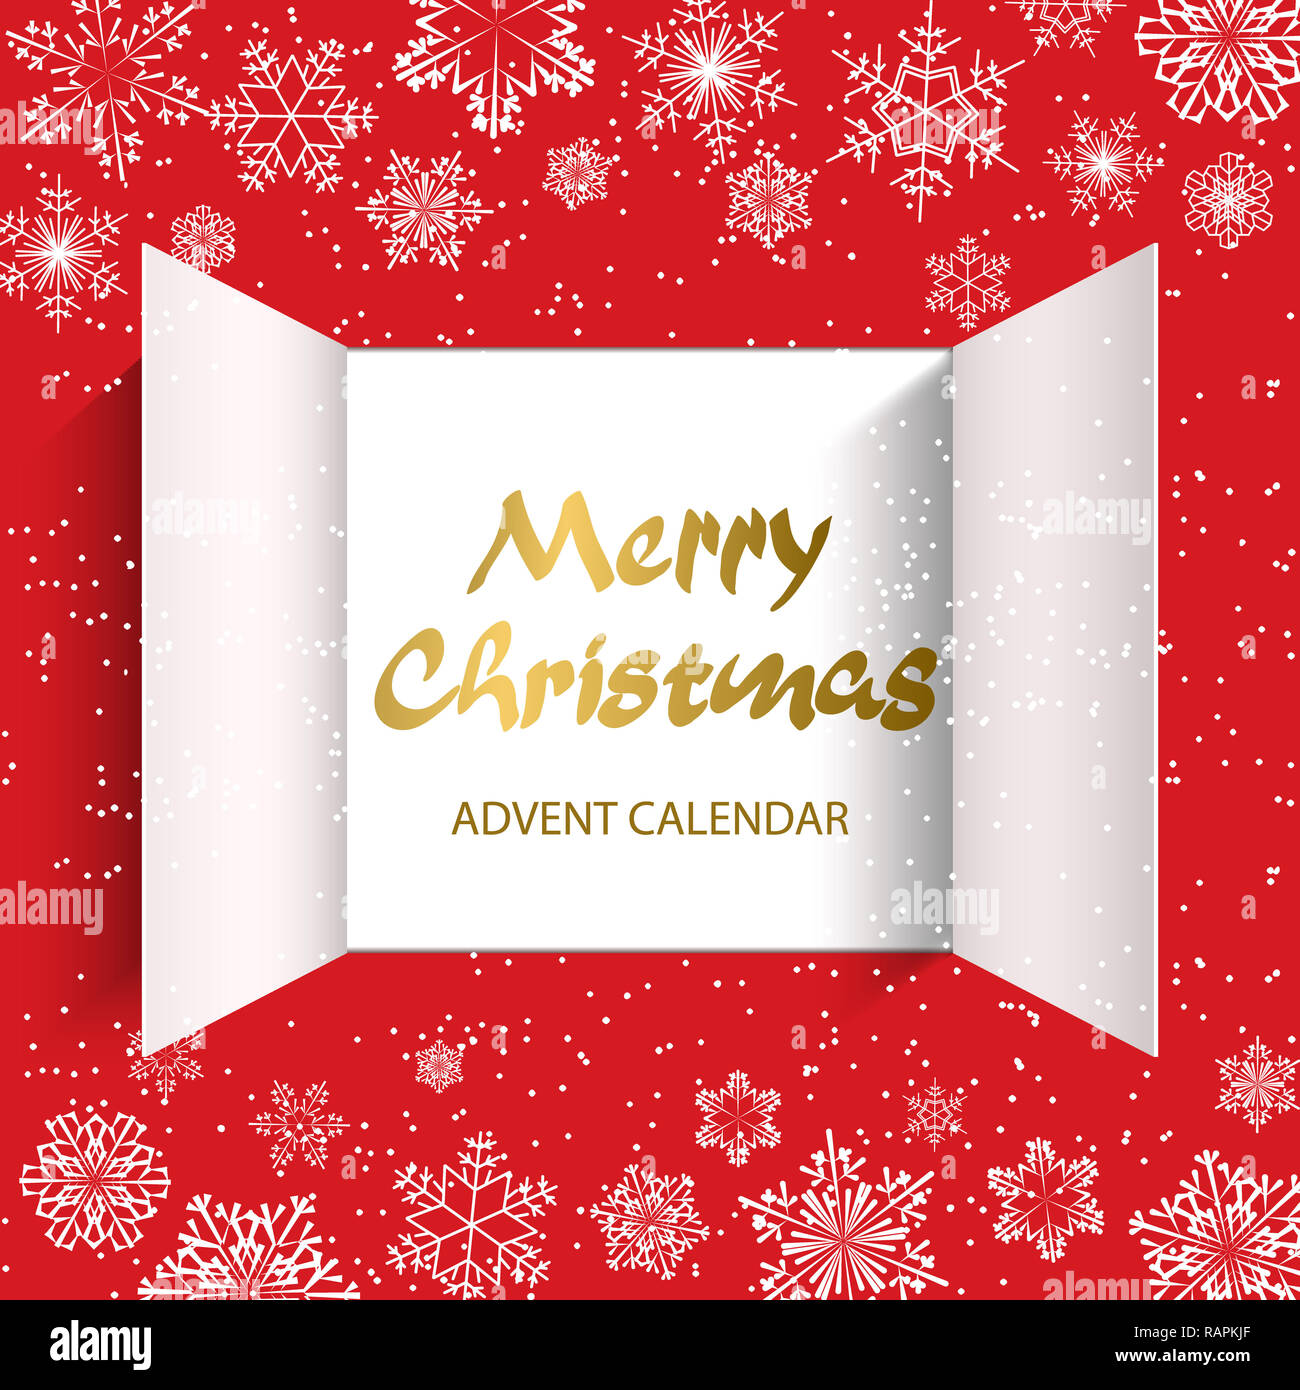 Weihnachten Adventskalender Türen öffnen und goldenen Buchstaben. Weiße  Schneeflocken auf einem roten Hintergrund. Vector Illustration  Stockfotografie - Alamy